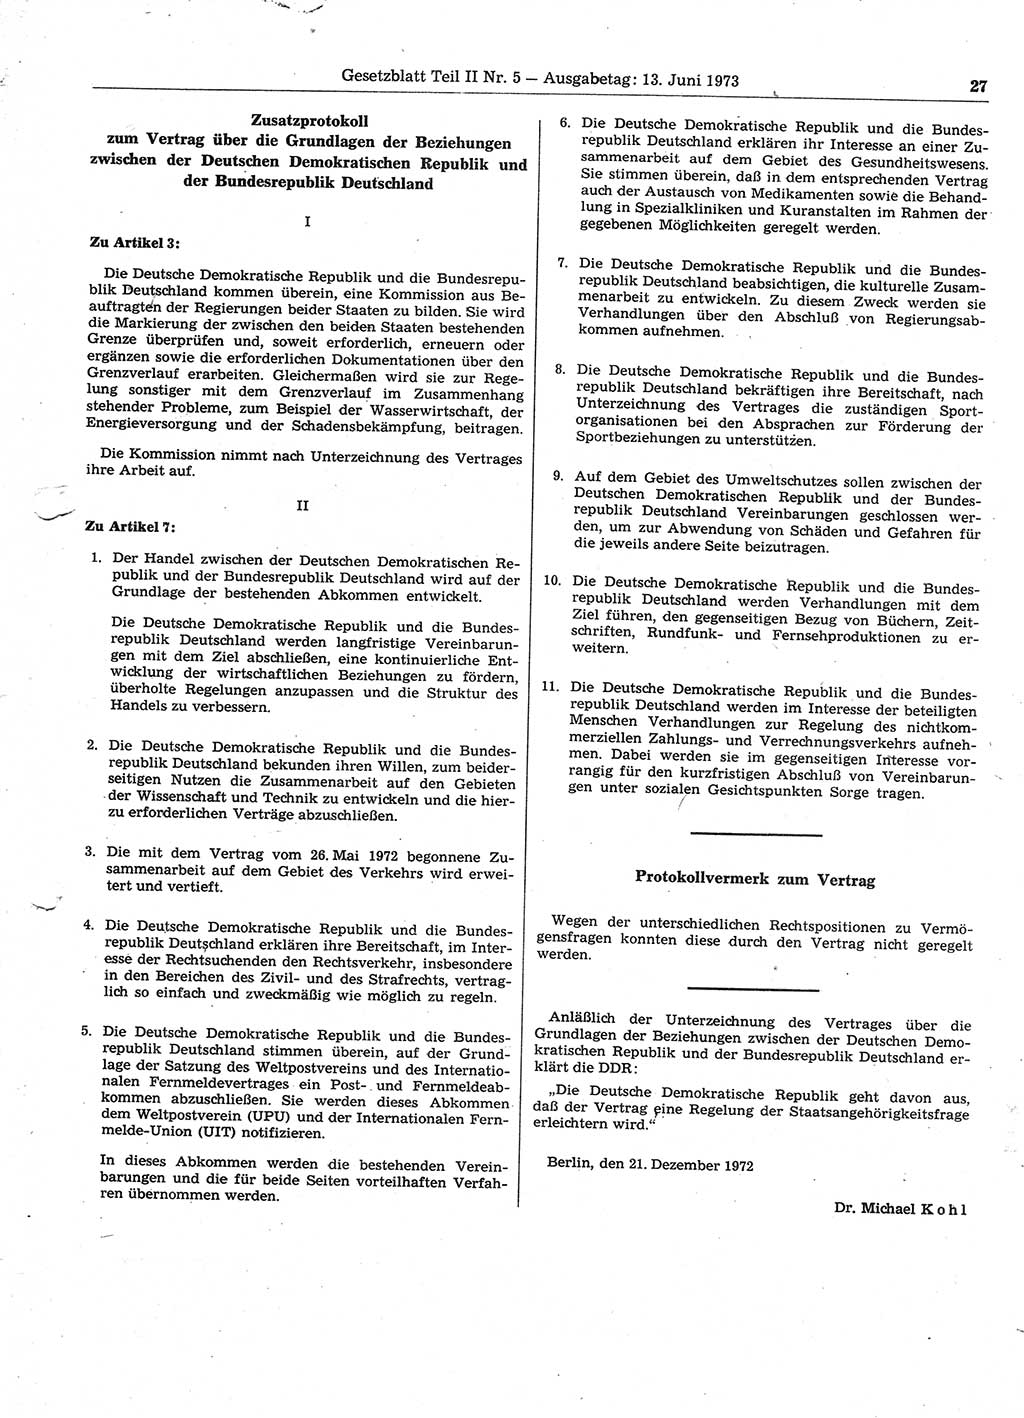 Gesetzblatt (GBl.) der Deutschen Demokratischen Republik (DDR) Teil ⅠⅠ 1973, Seite 27 (GBl. DDR ⅠⅠ 1973, S. 27)